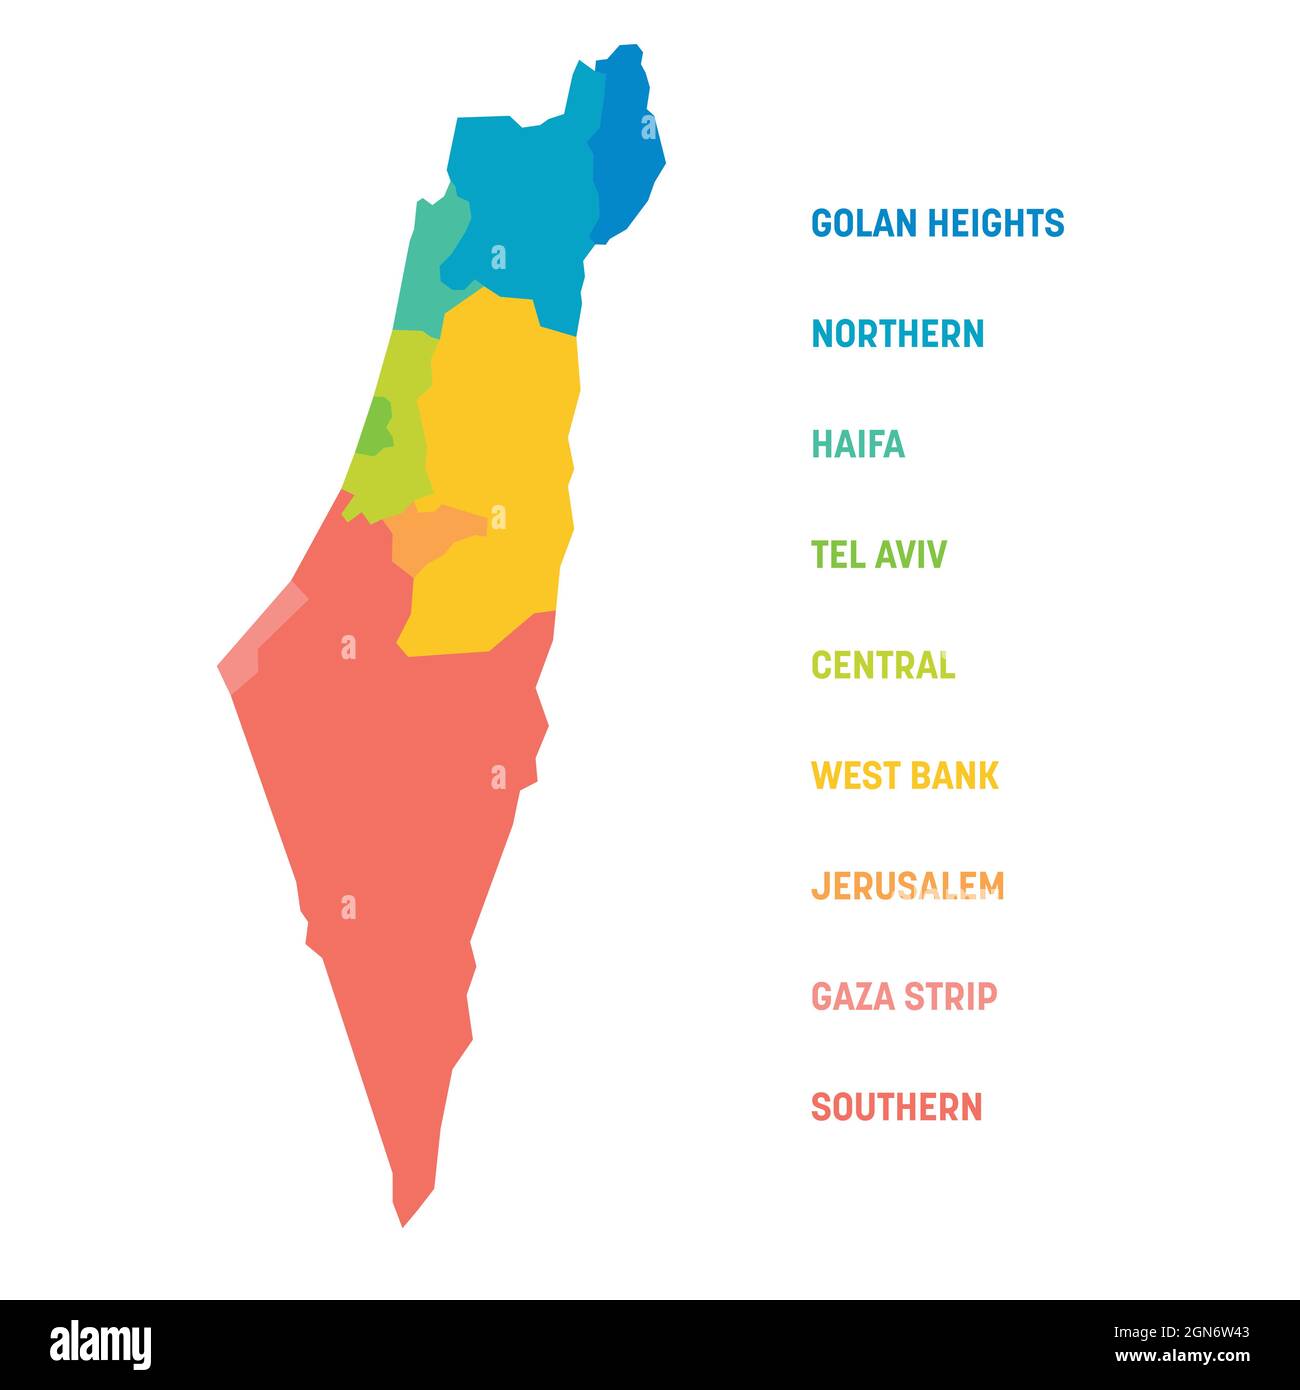 Carte politique colorée d'Israël. Divisions administratives - districts et trois territoires spéciaux - bande de Gaza, Cisjordanie et plateau du Golan. Carte vectorielle plate simple avec étiquettes. Illustration de Vecteur